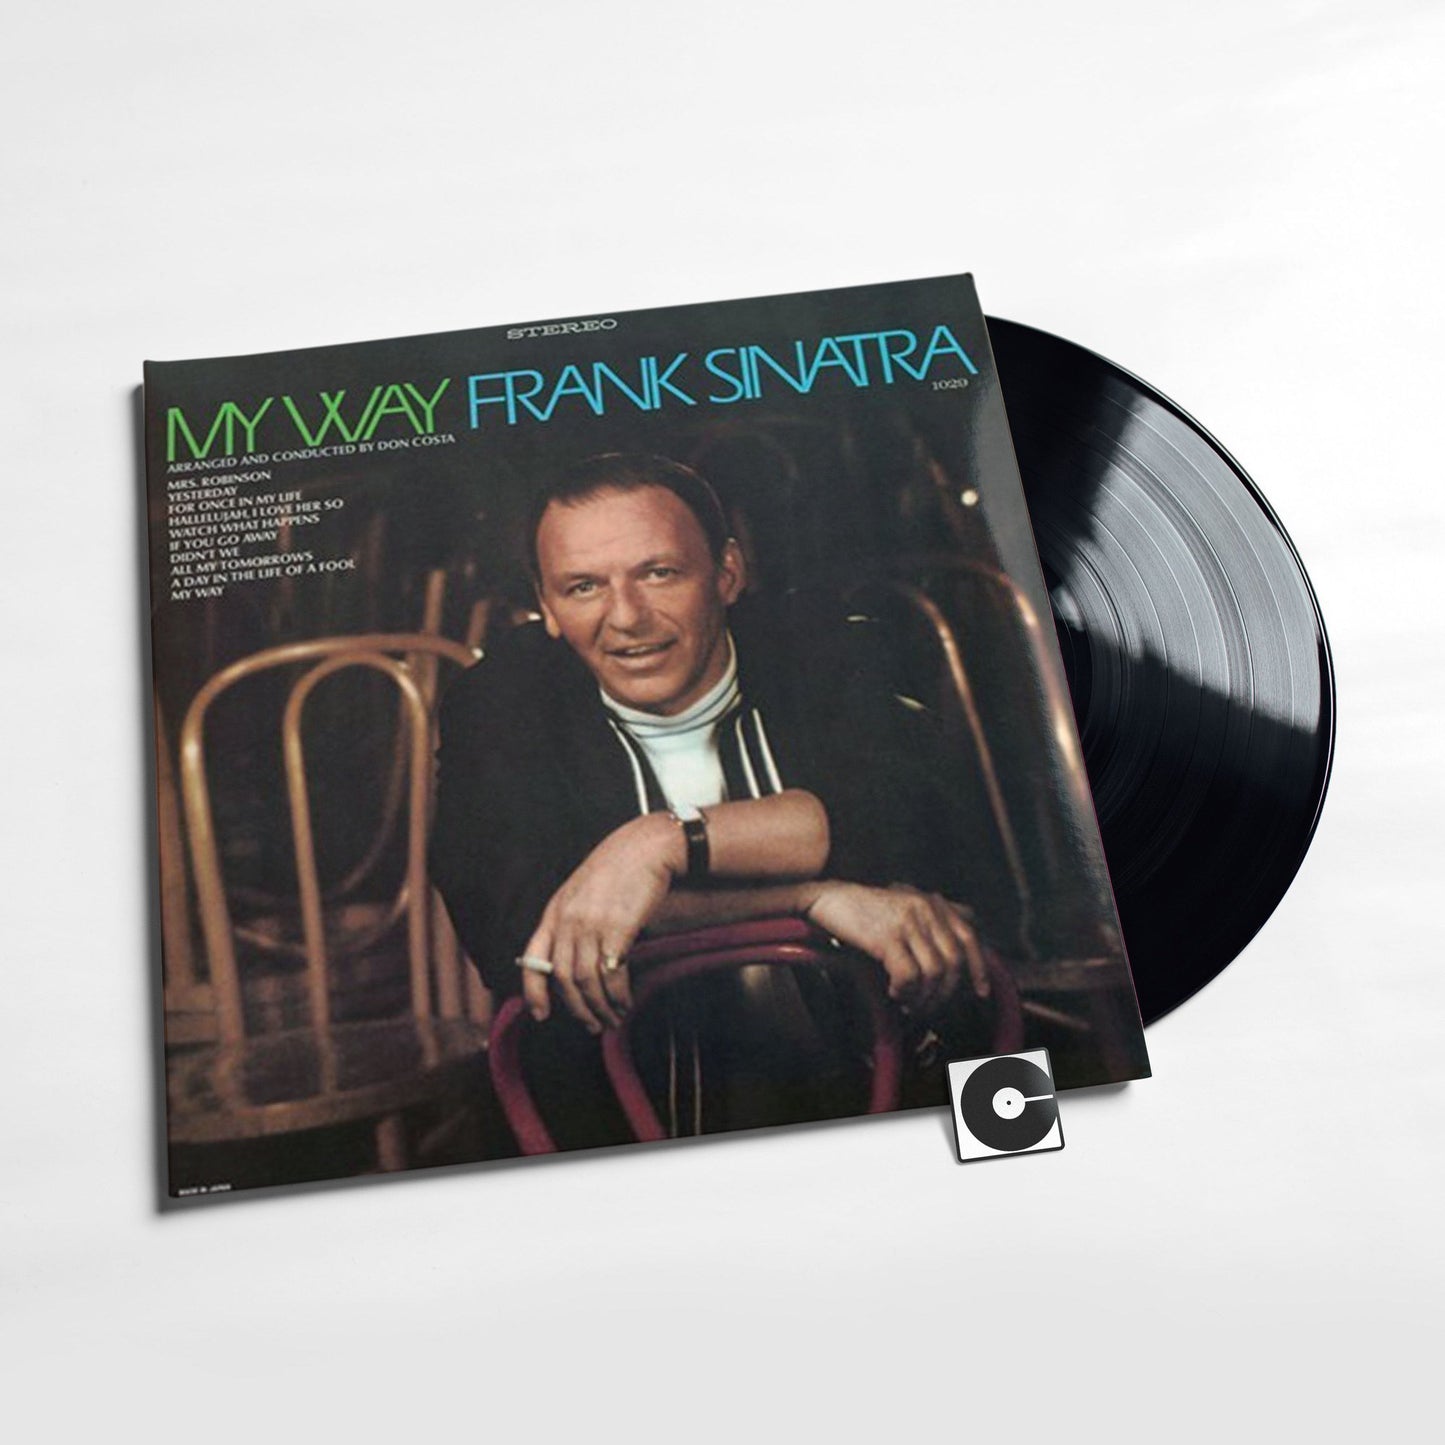 Frank Sinatra - "My Way"